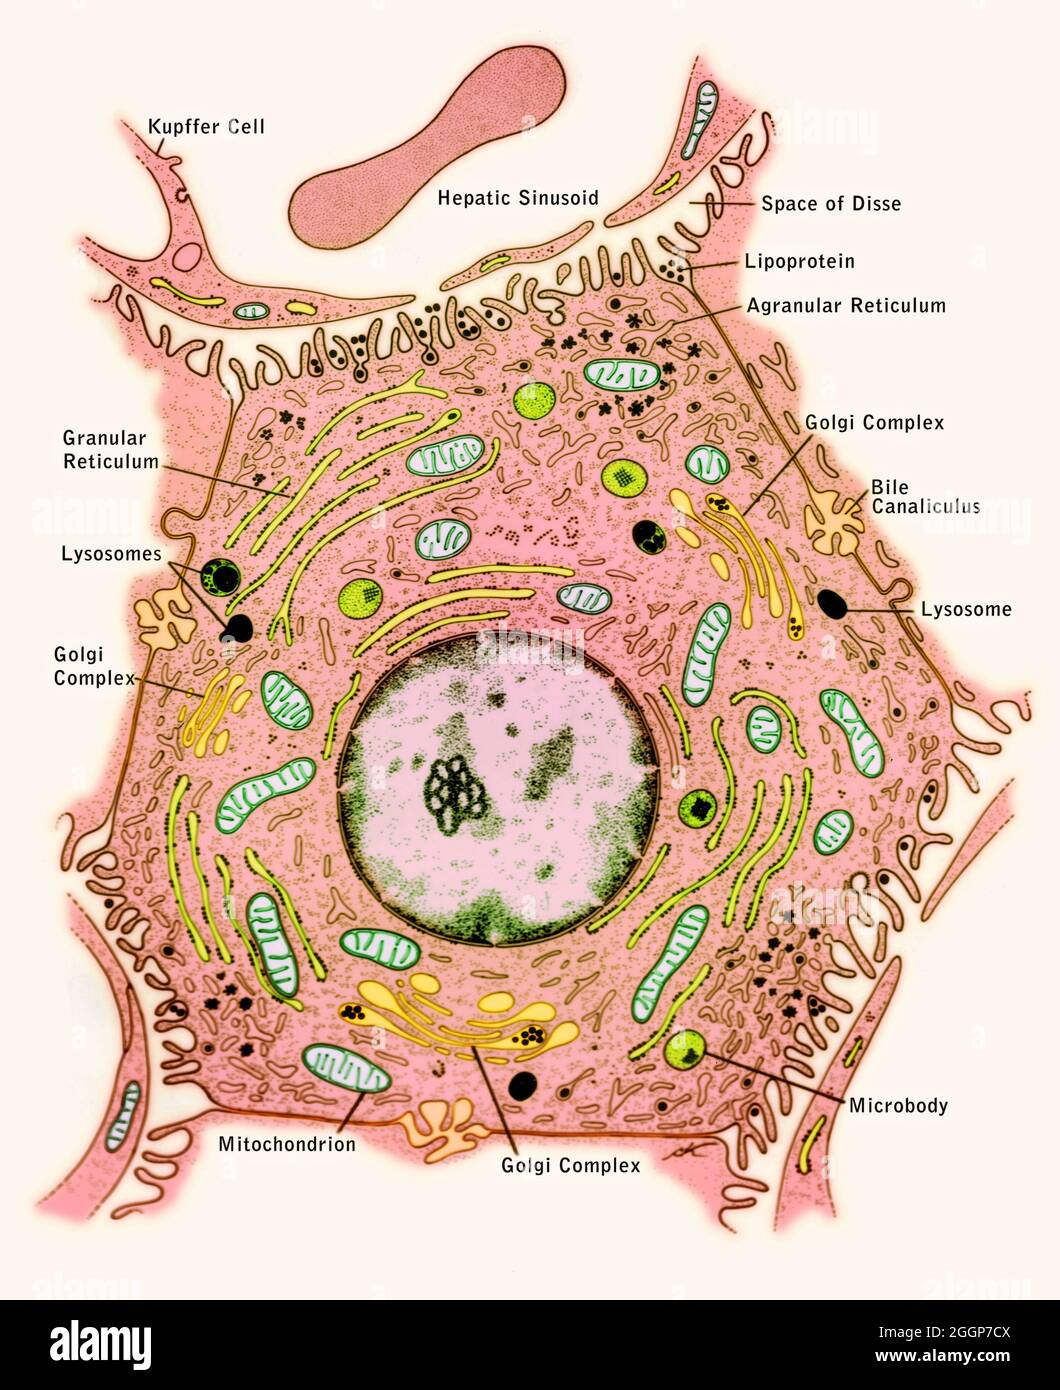 Diagramma etichettato e illustrato dell'ultrastruttura e delle relazioni di una cellula epatica. Foto Stock